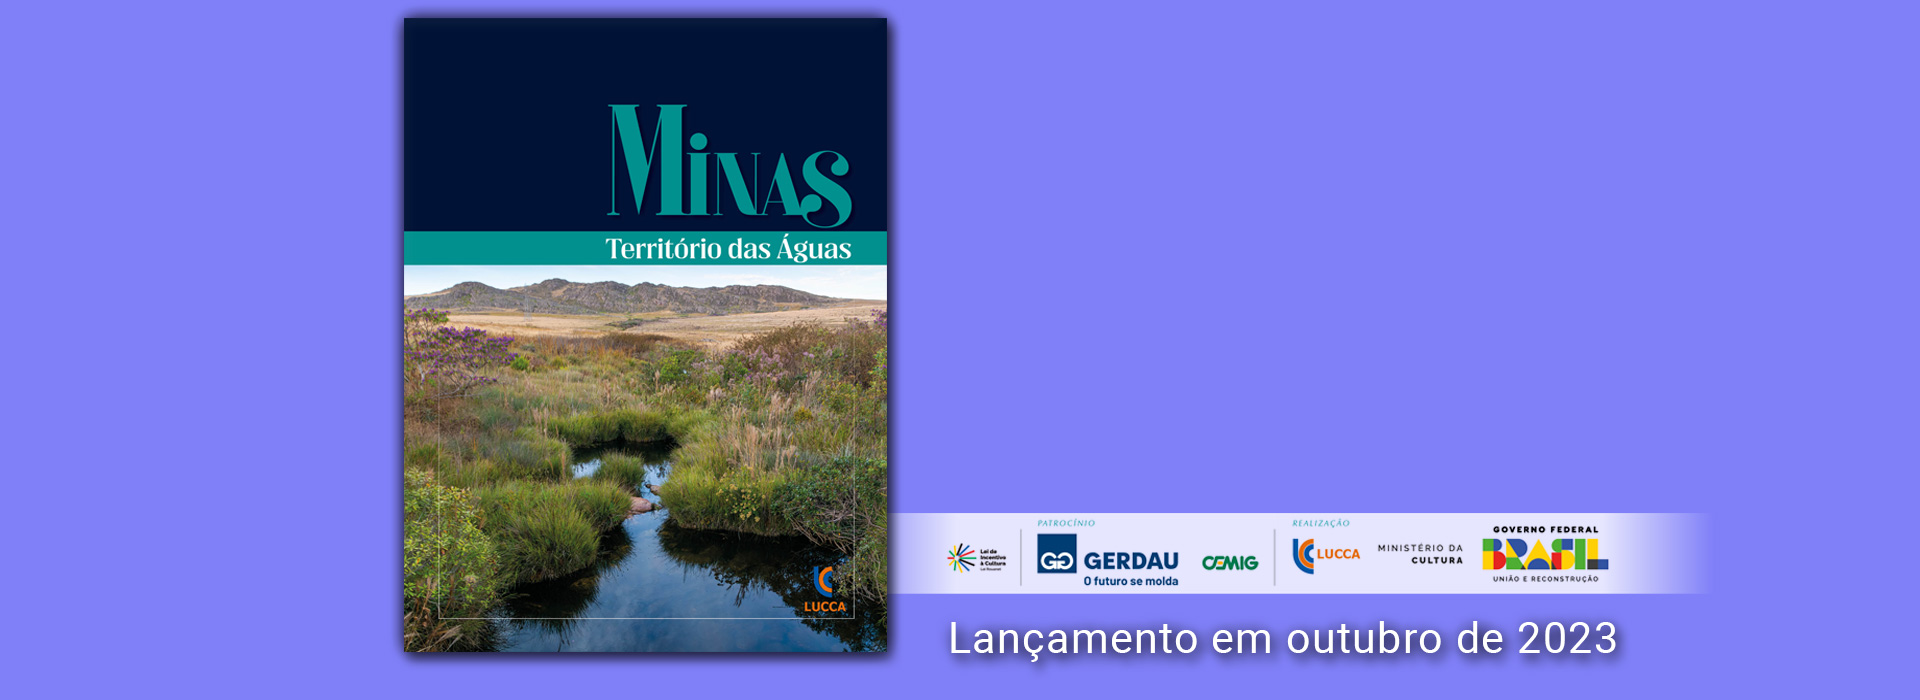 Minas – Território das Águas